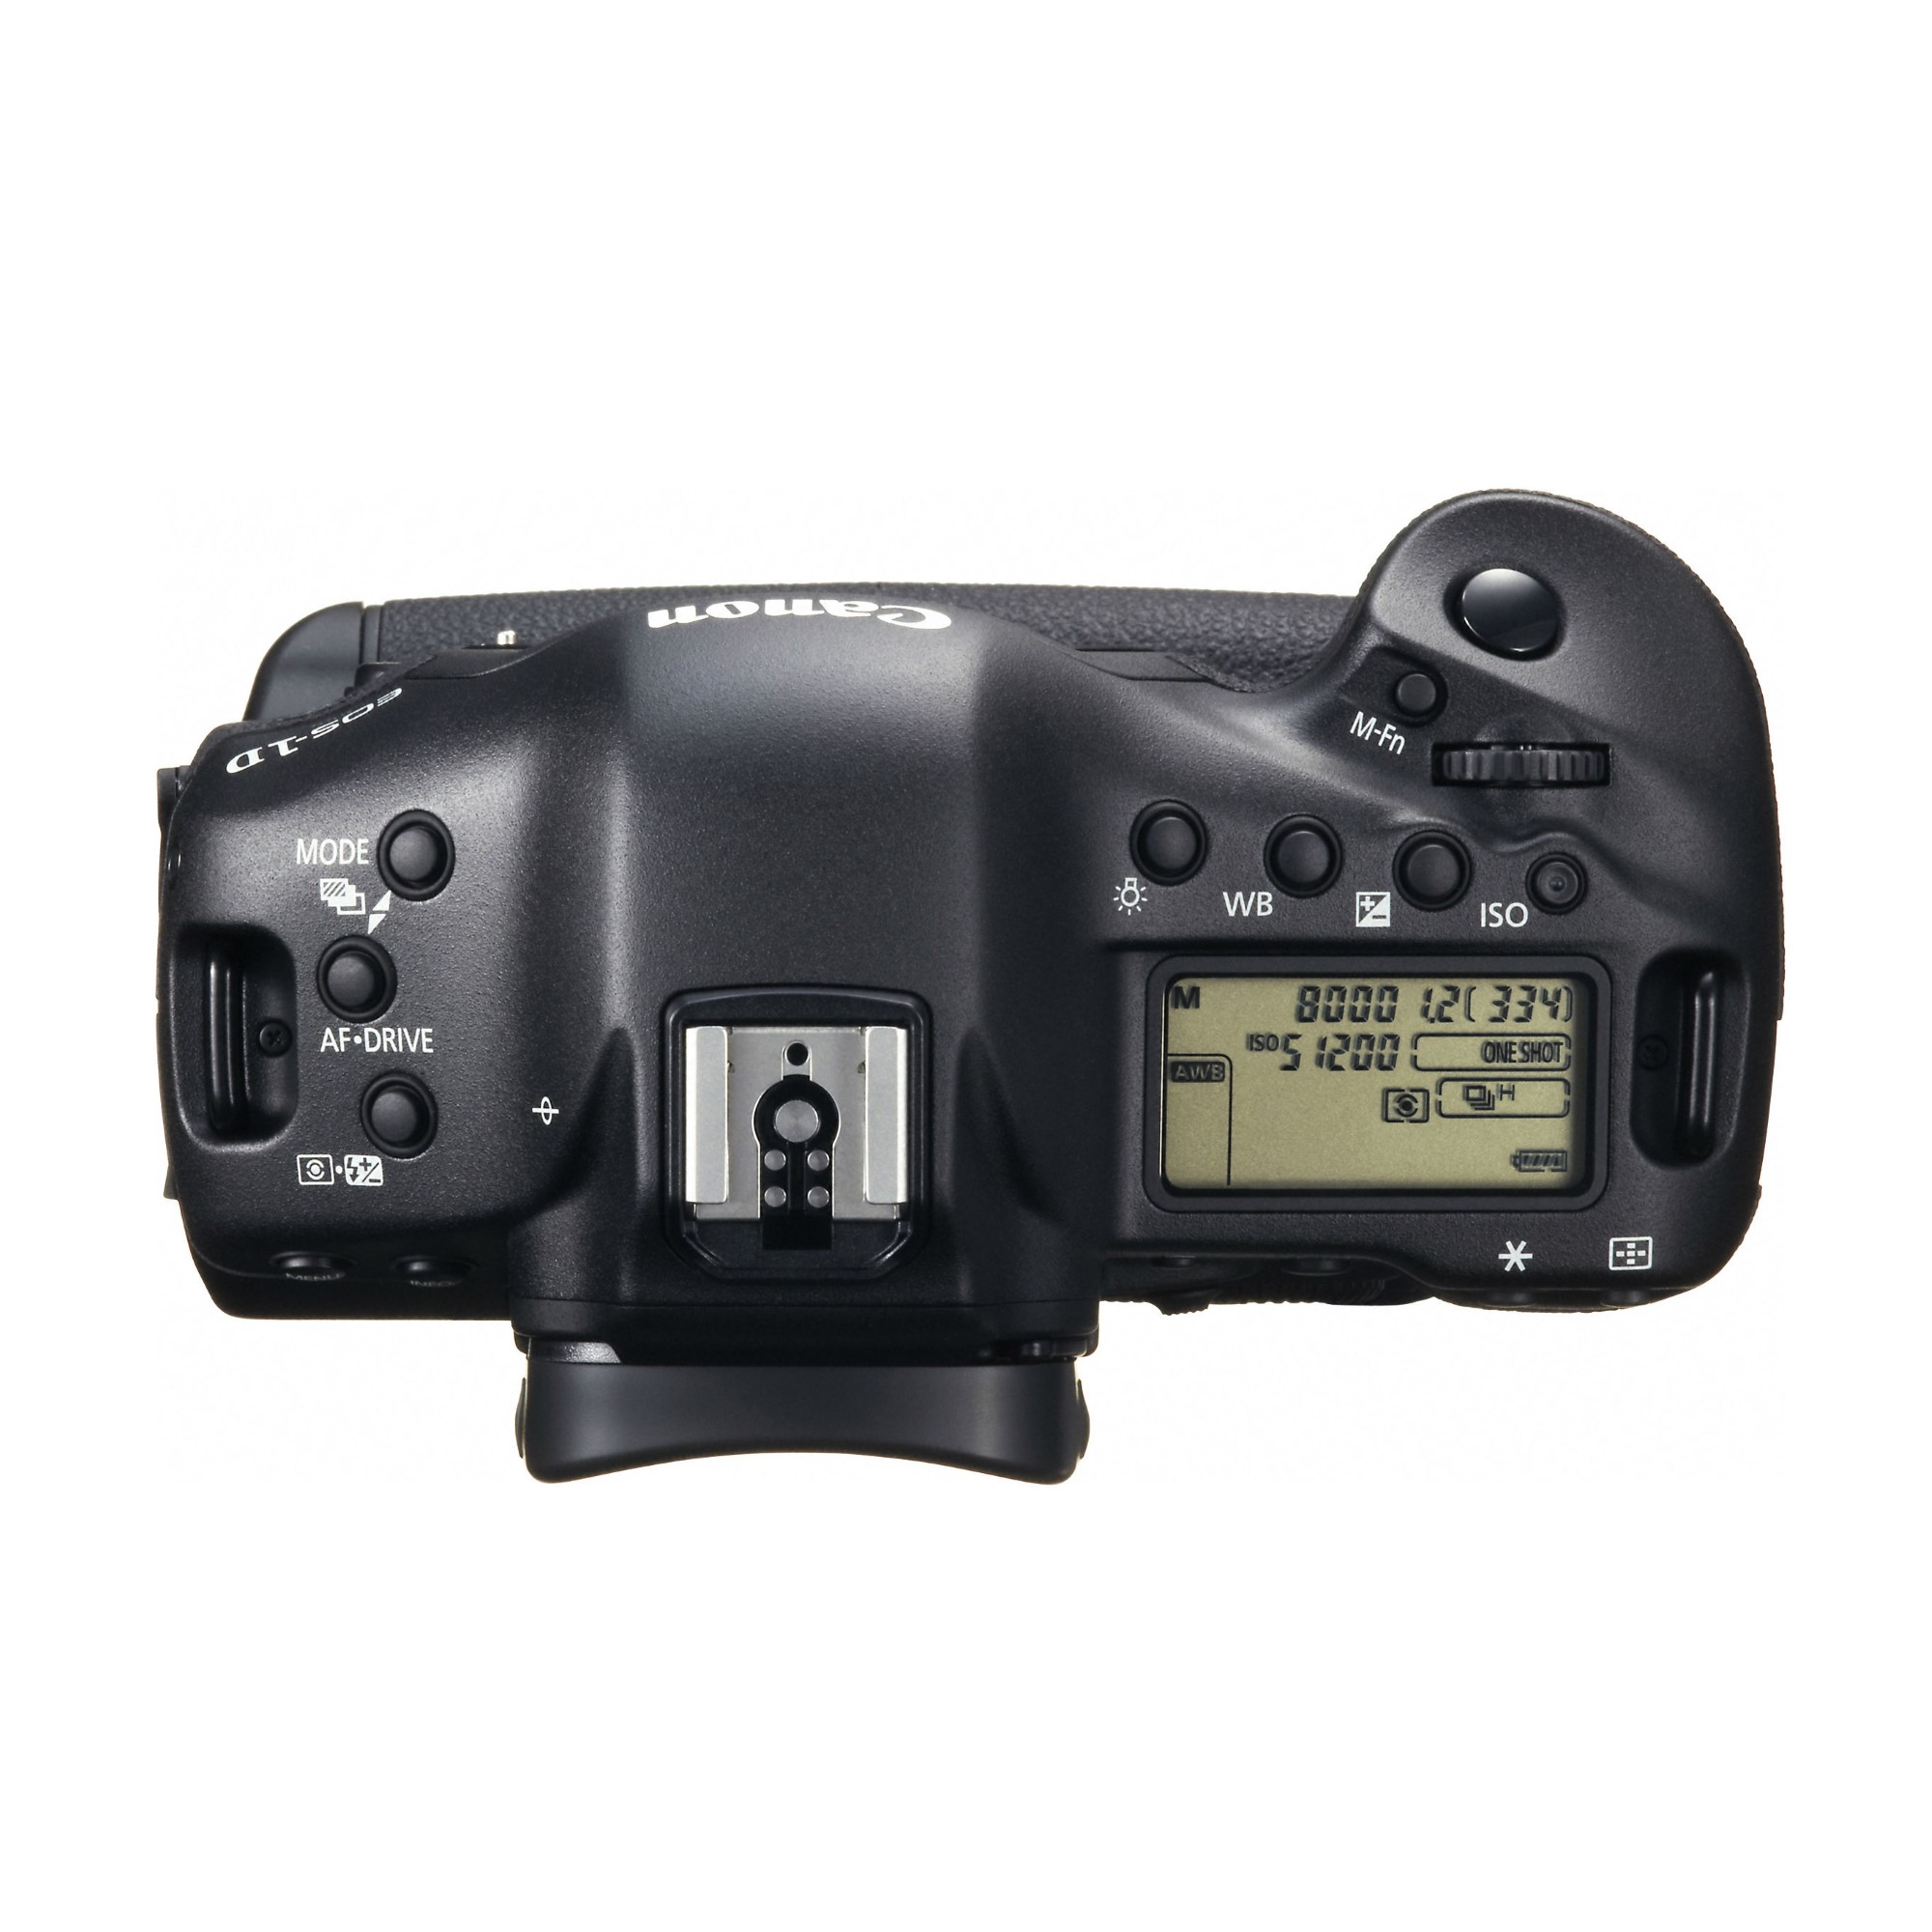 Canon EOS 1D-X